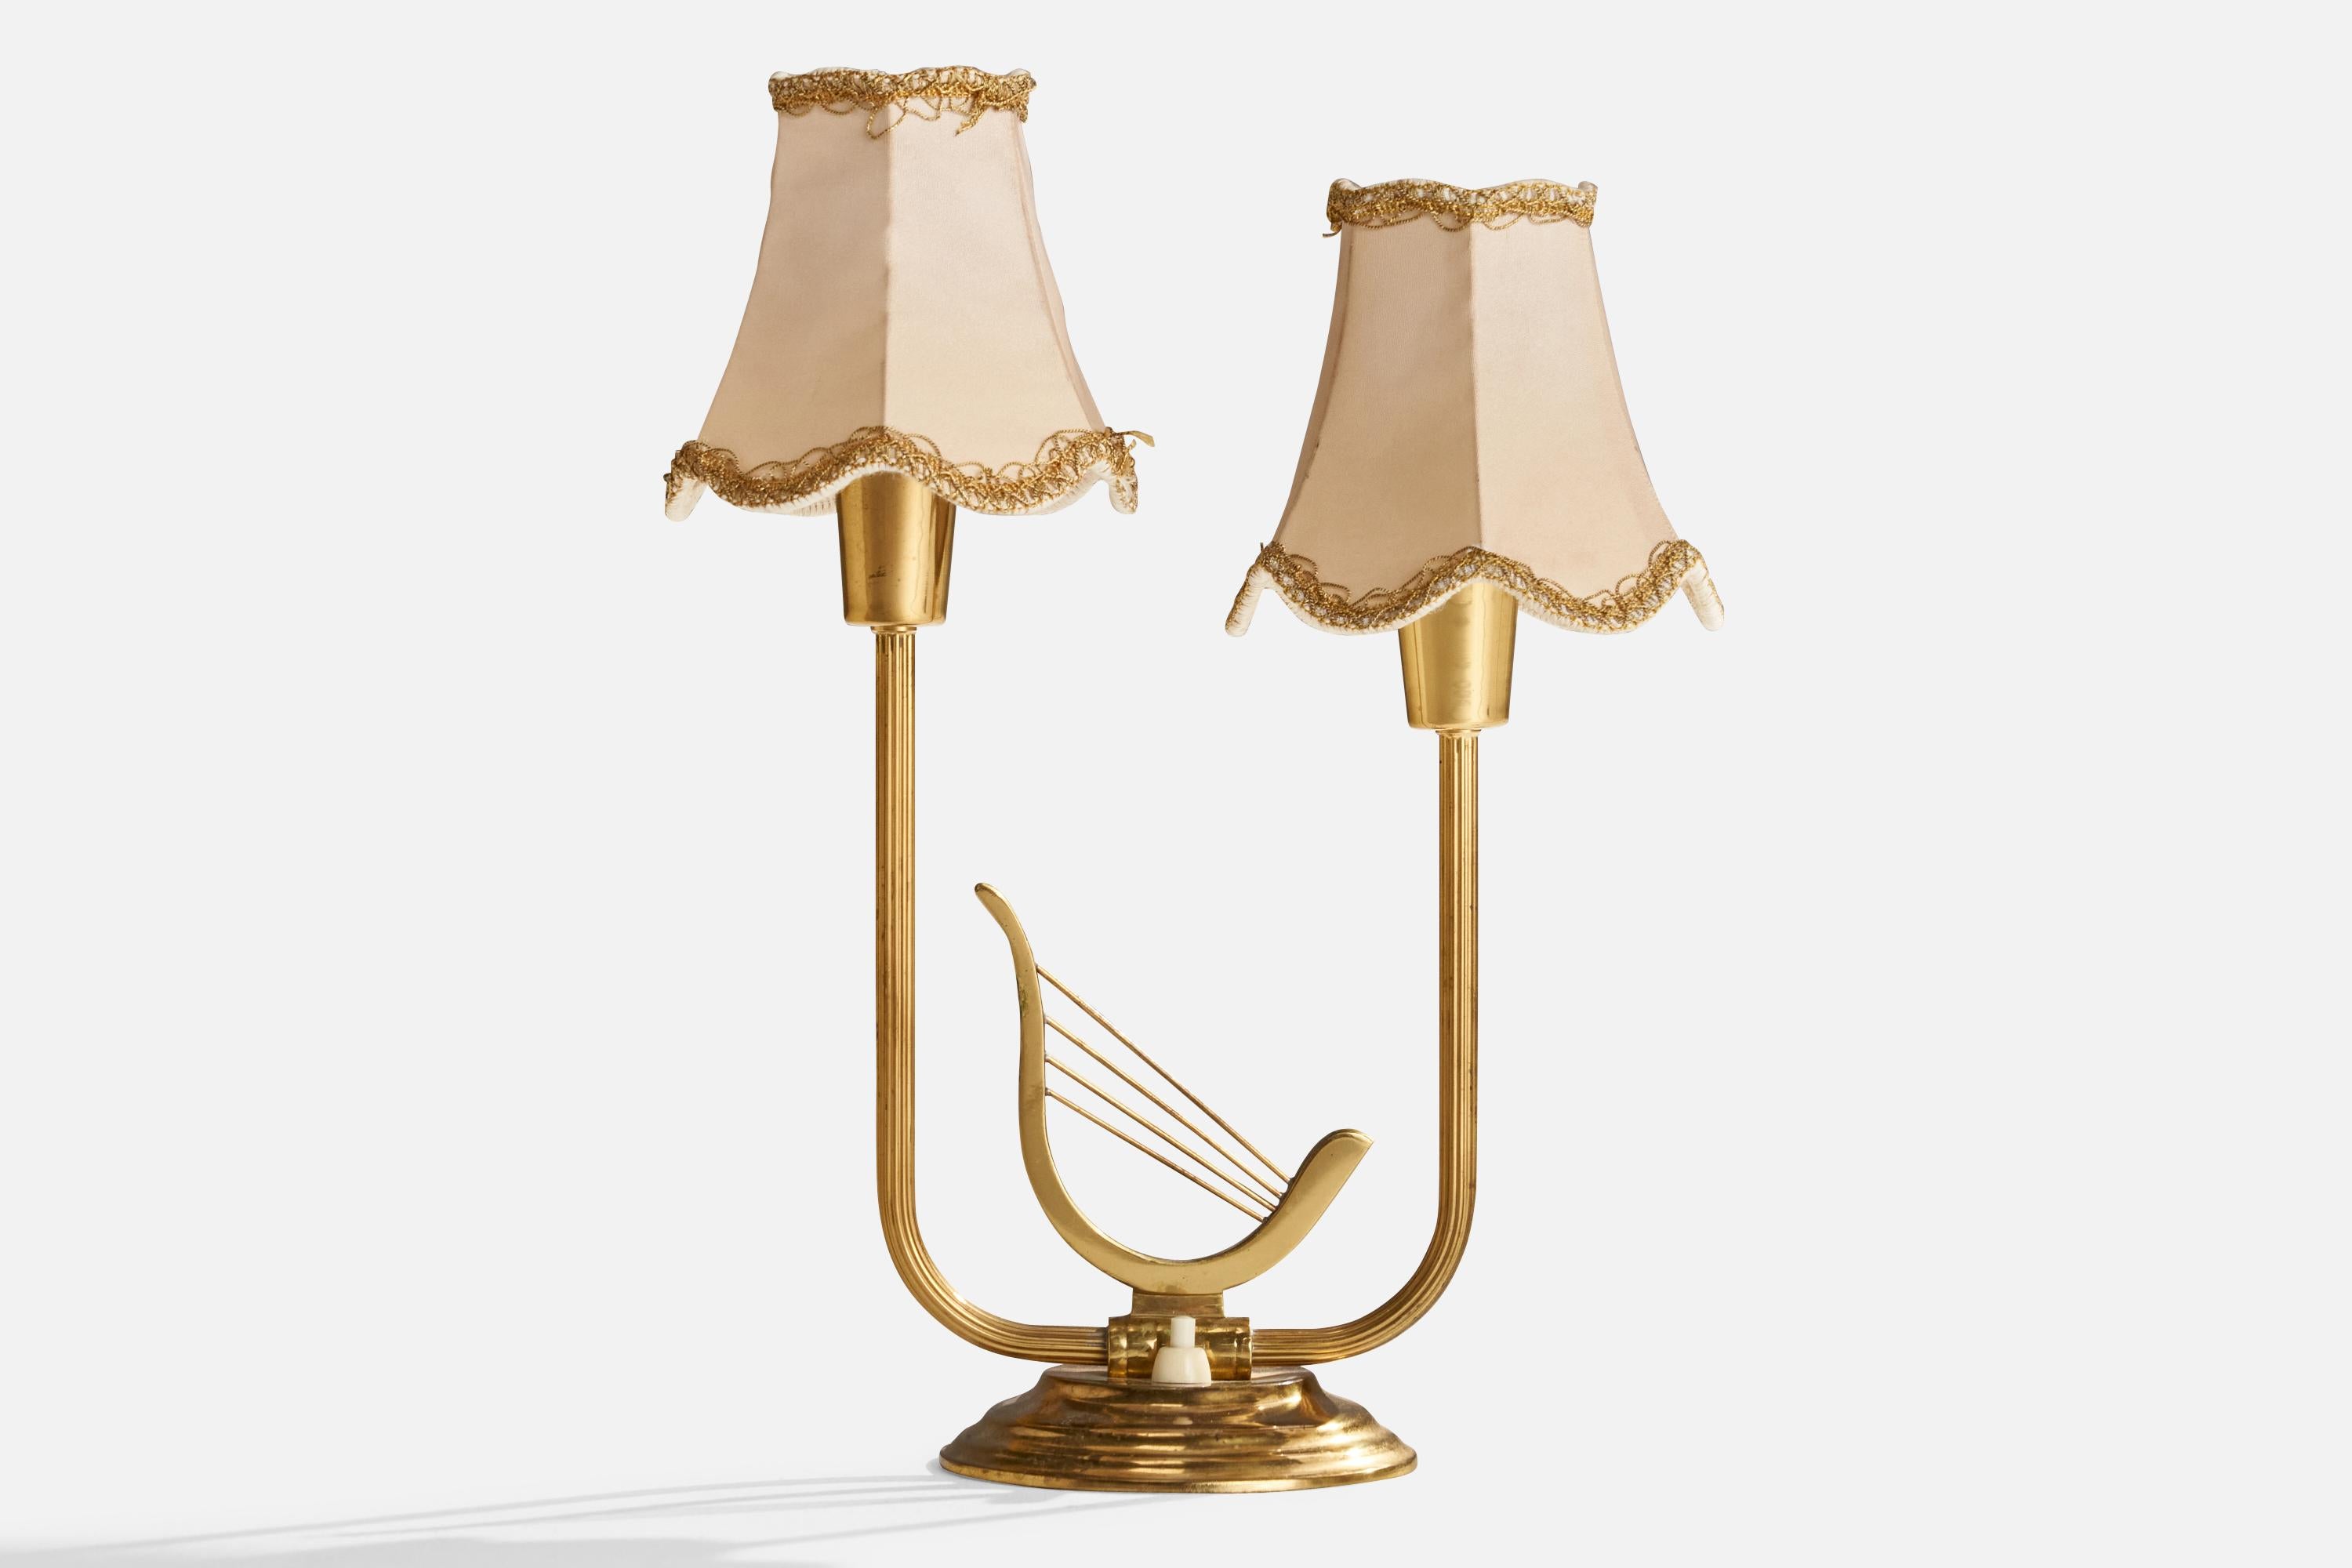 Lampe de table en laiton et tissu, conçue et produite en Suède, vers les années 1940.

Dimensions globales (pouces) : 14